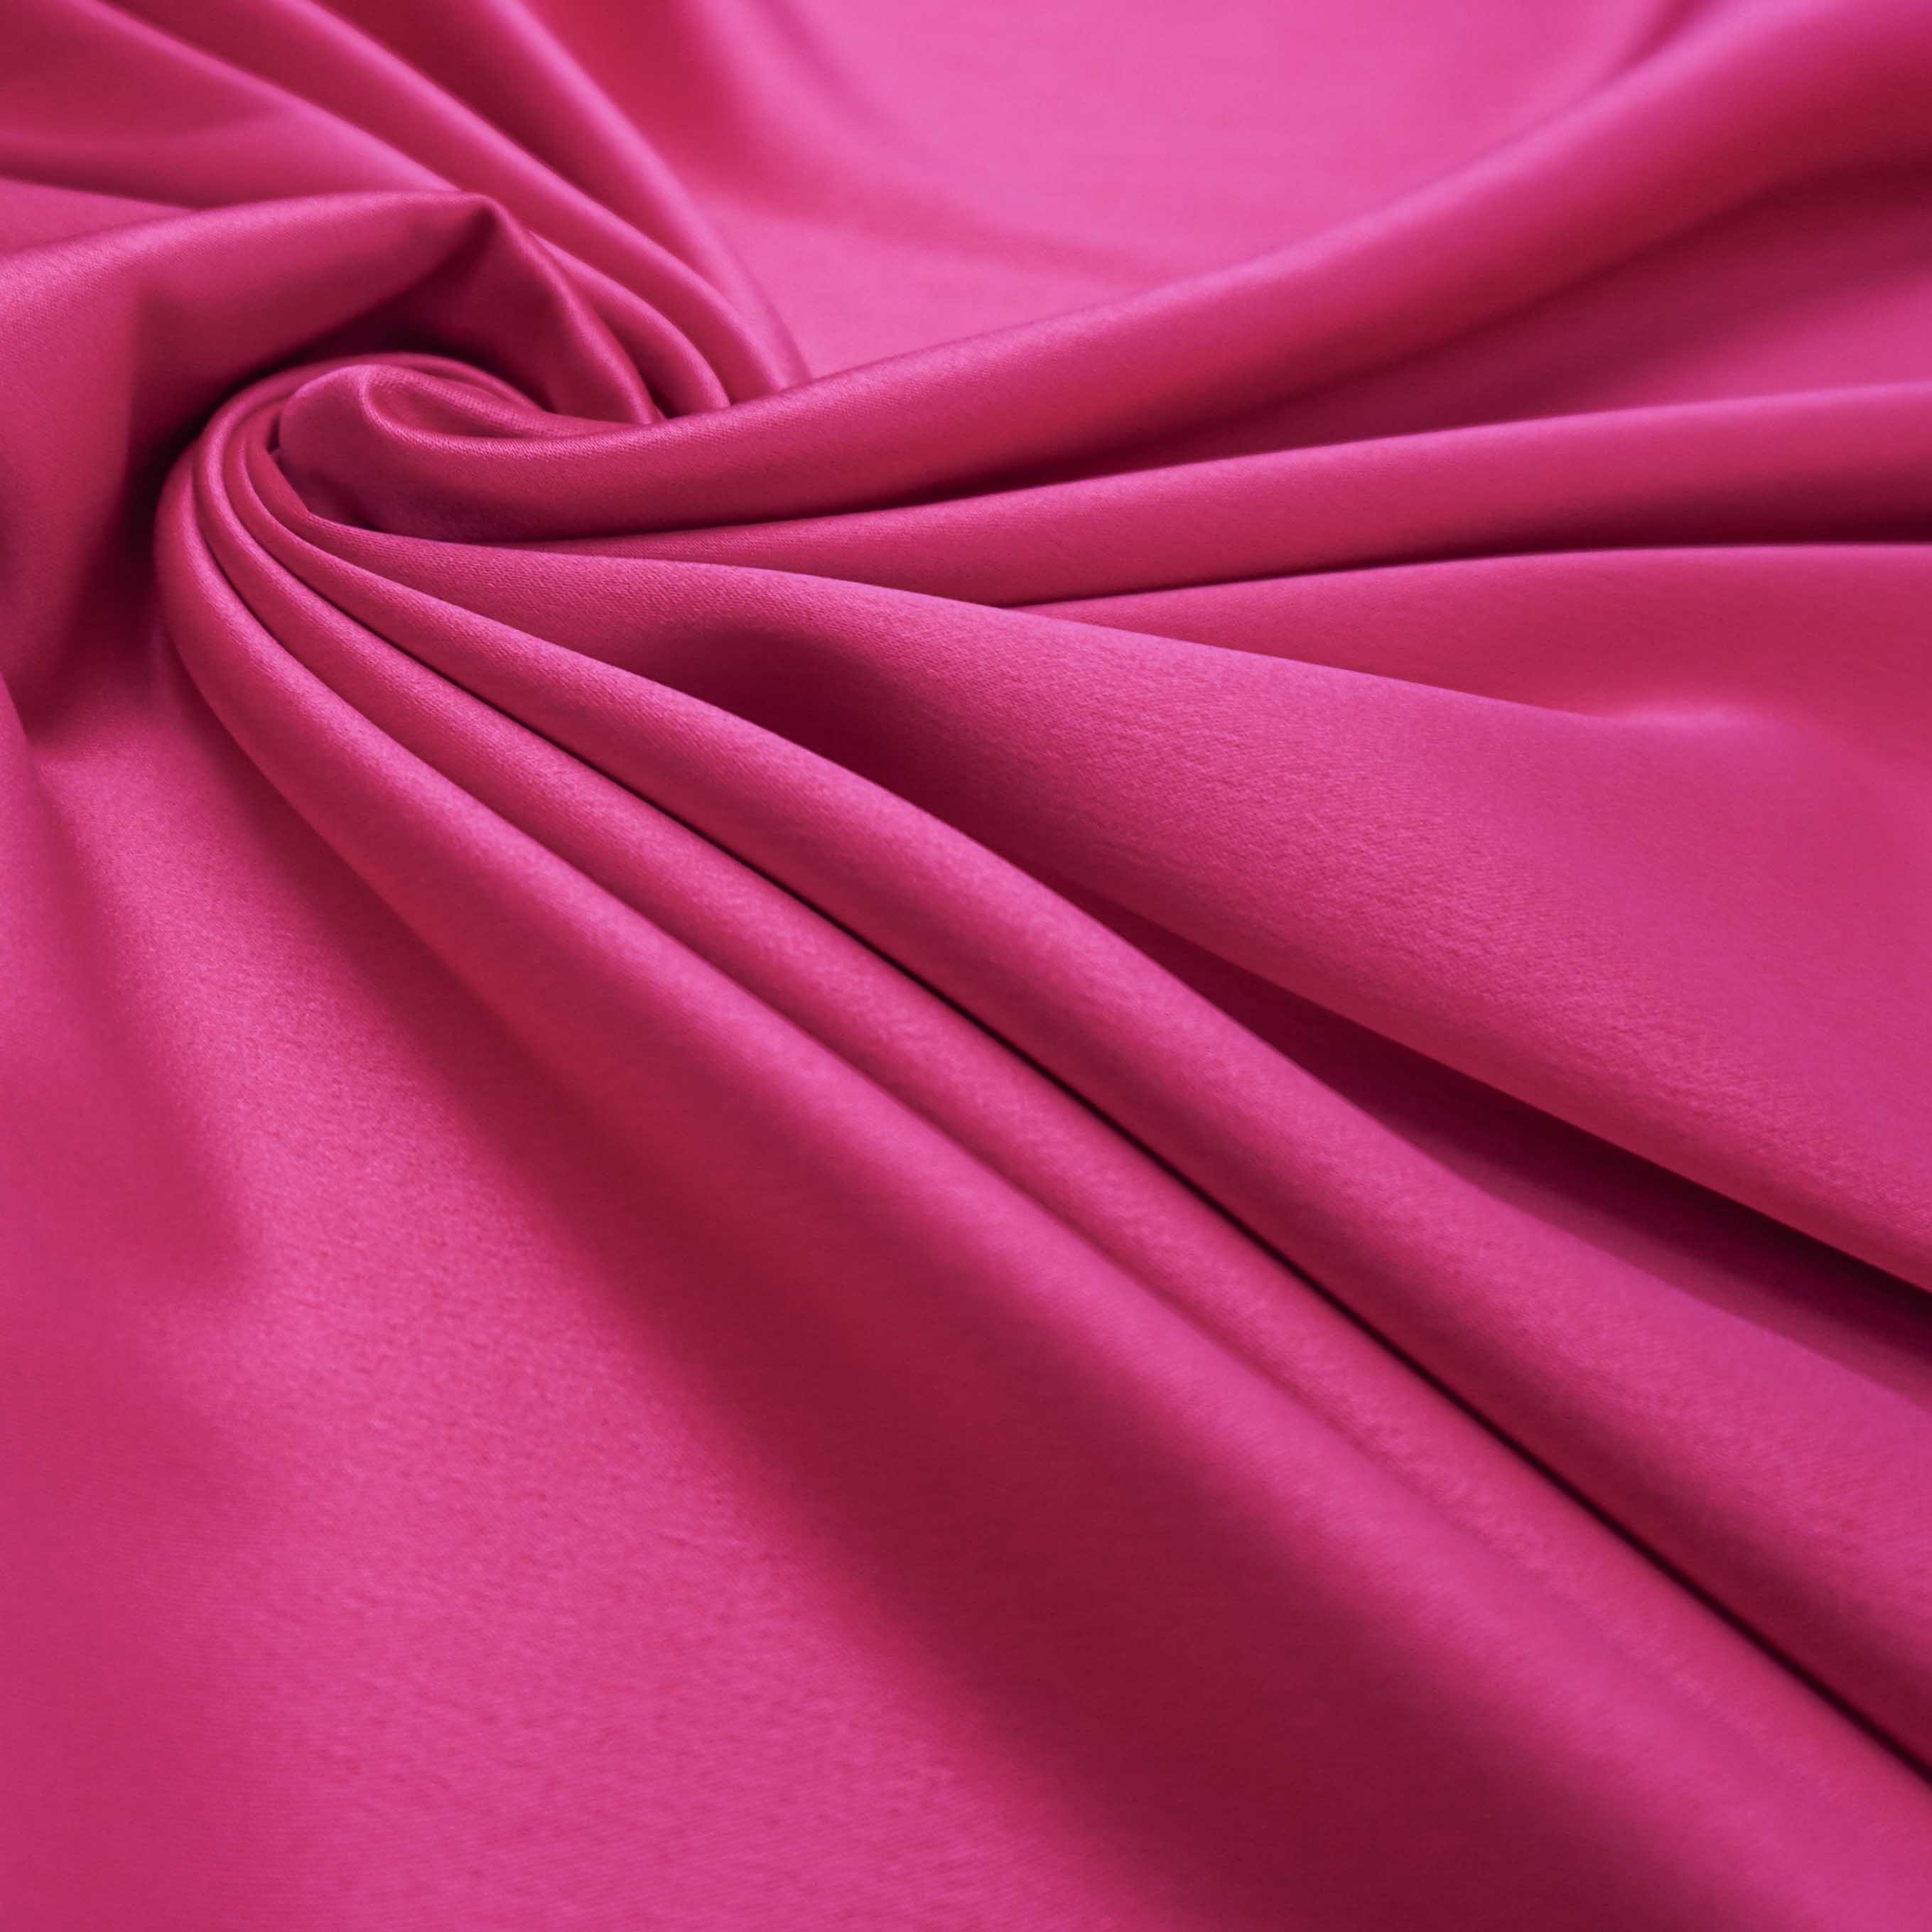 Tecido crepe versailles encorpado pink